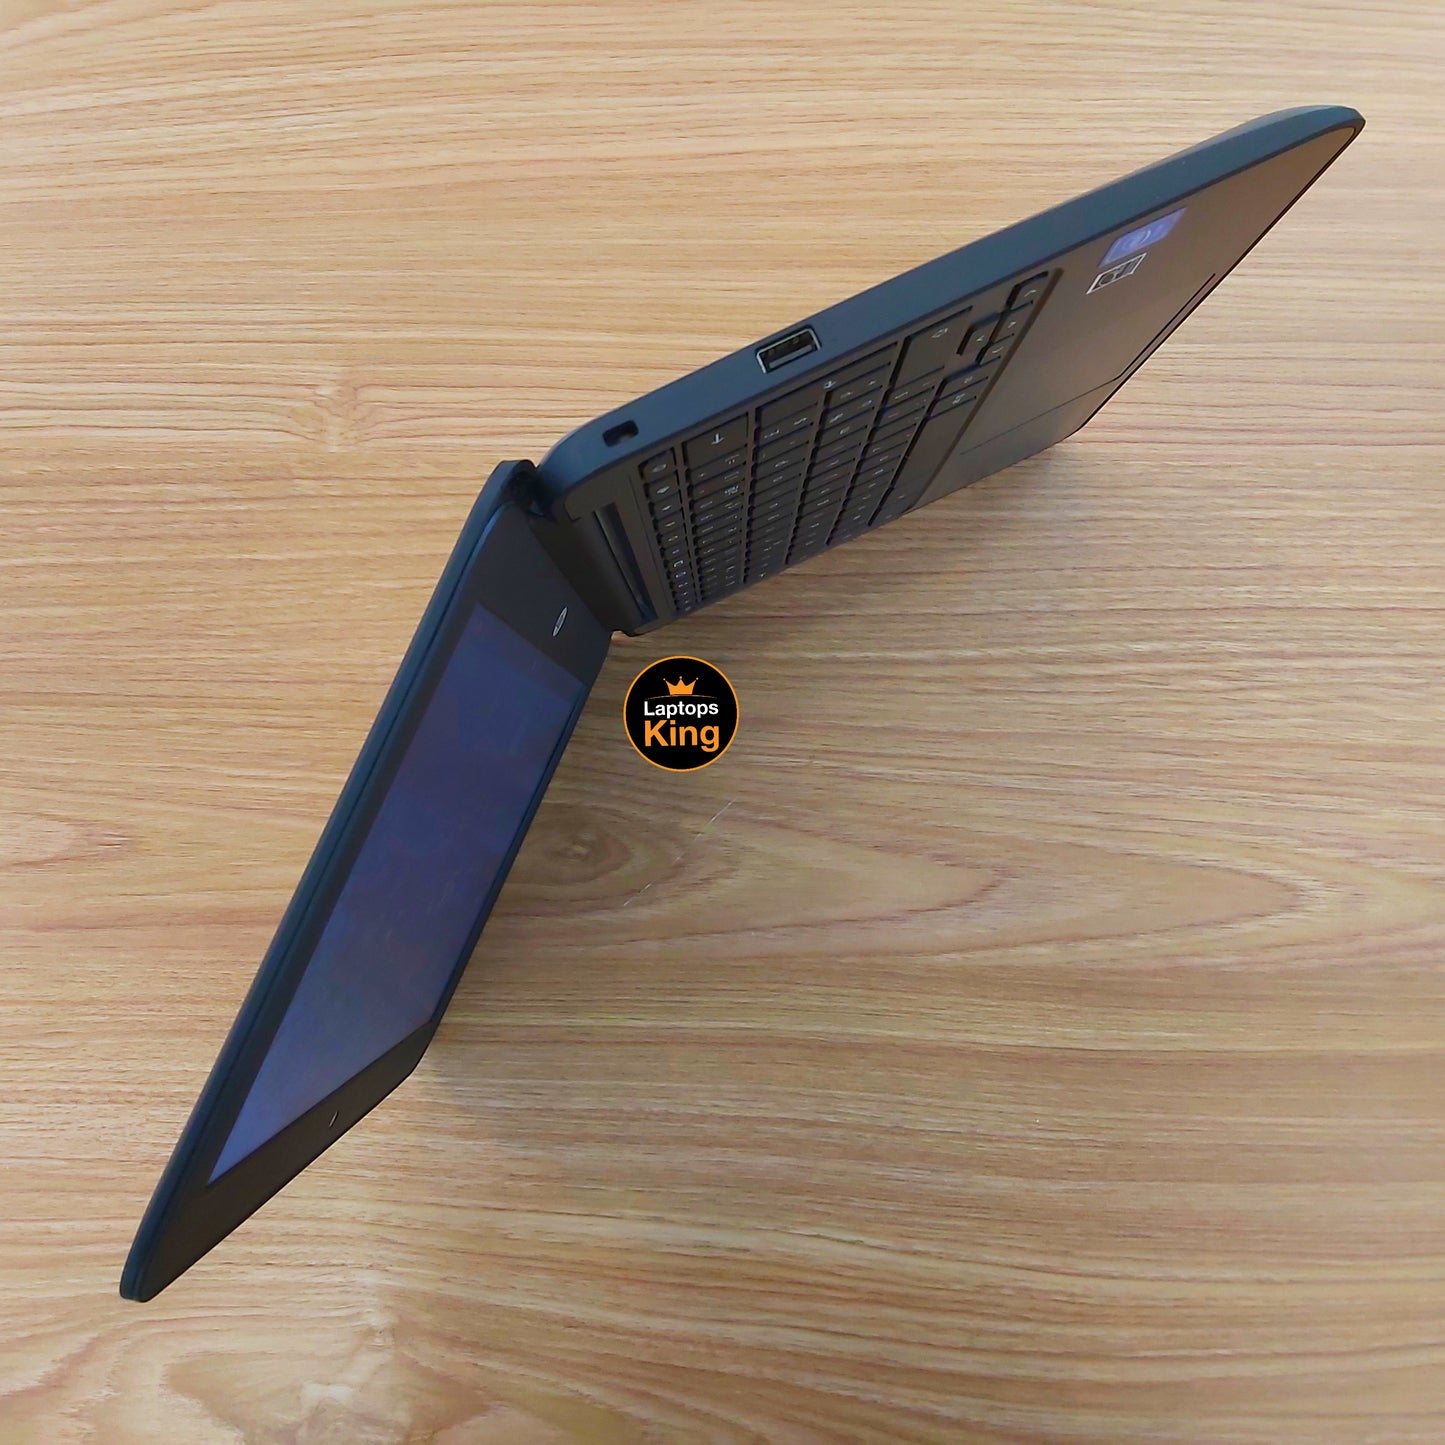 Hp Chromebook 11 G5 Ee Laptop (Used Very Clean)